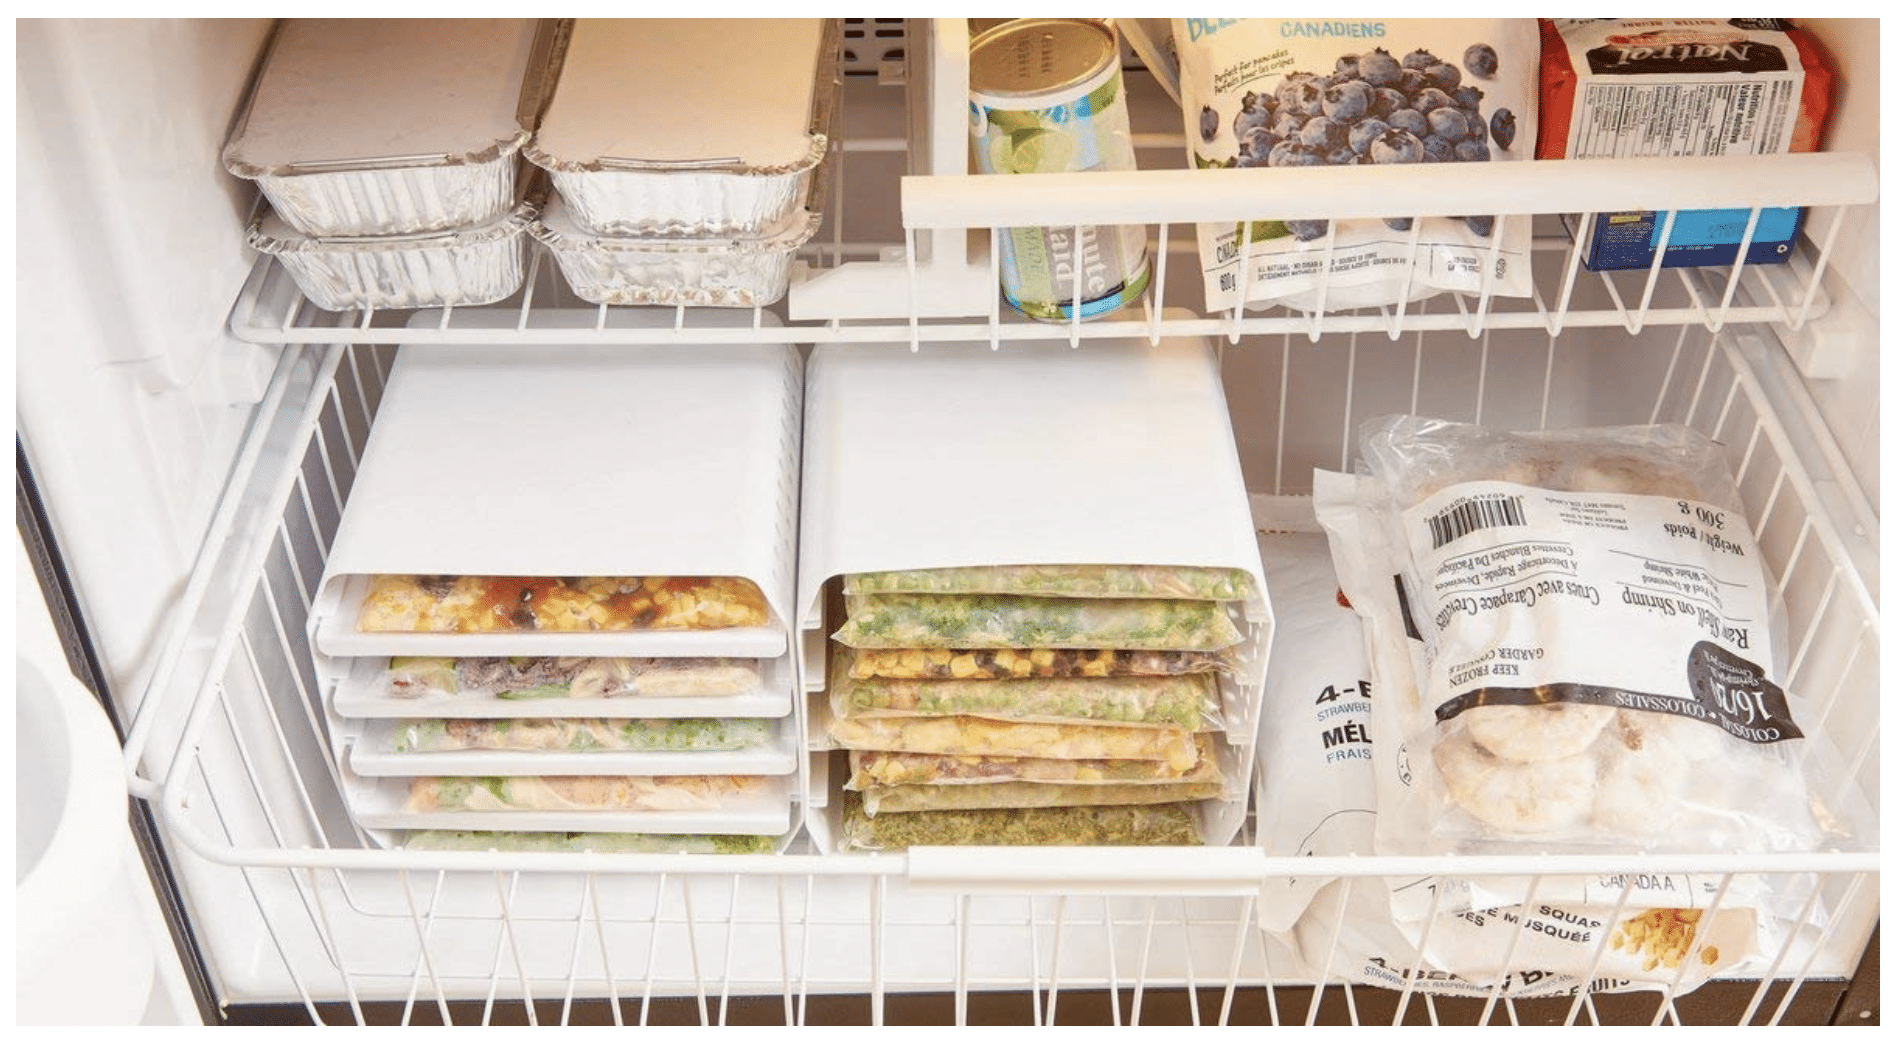 Organized Refrigerator freezer